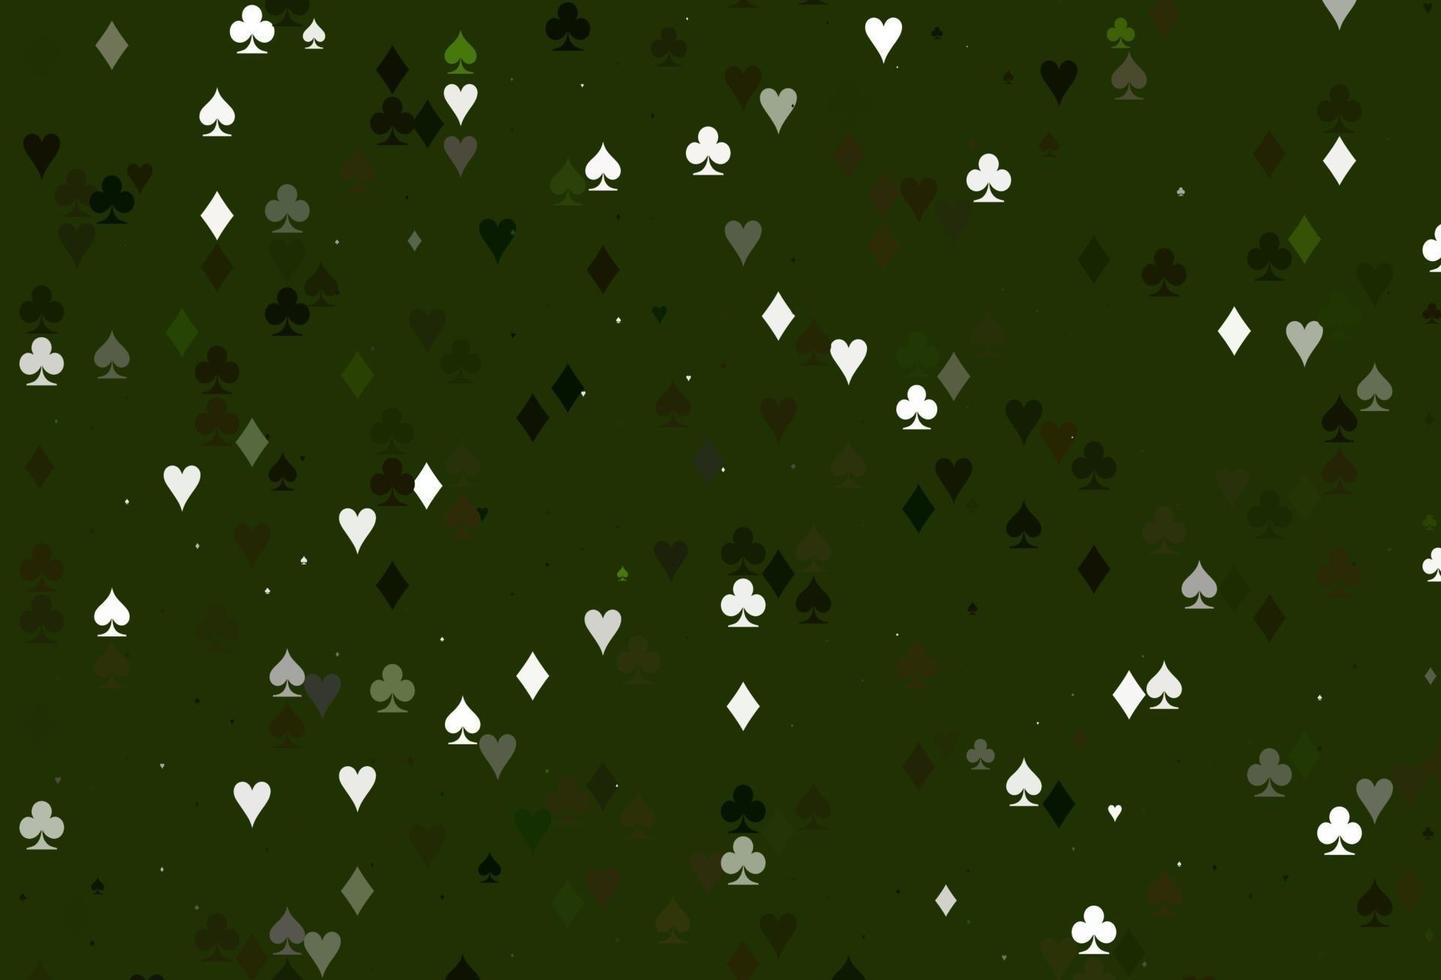 sfondo vettoriale verde chiaro con segni di carte.